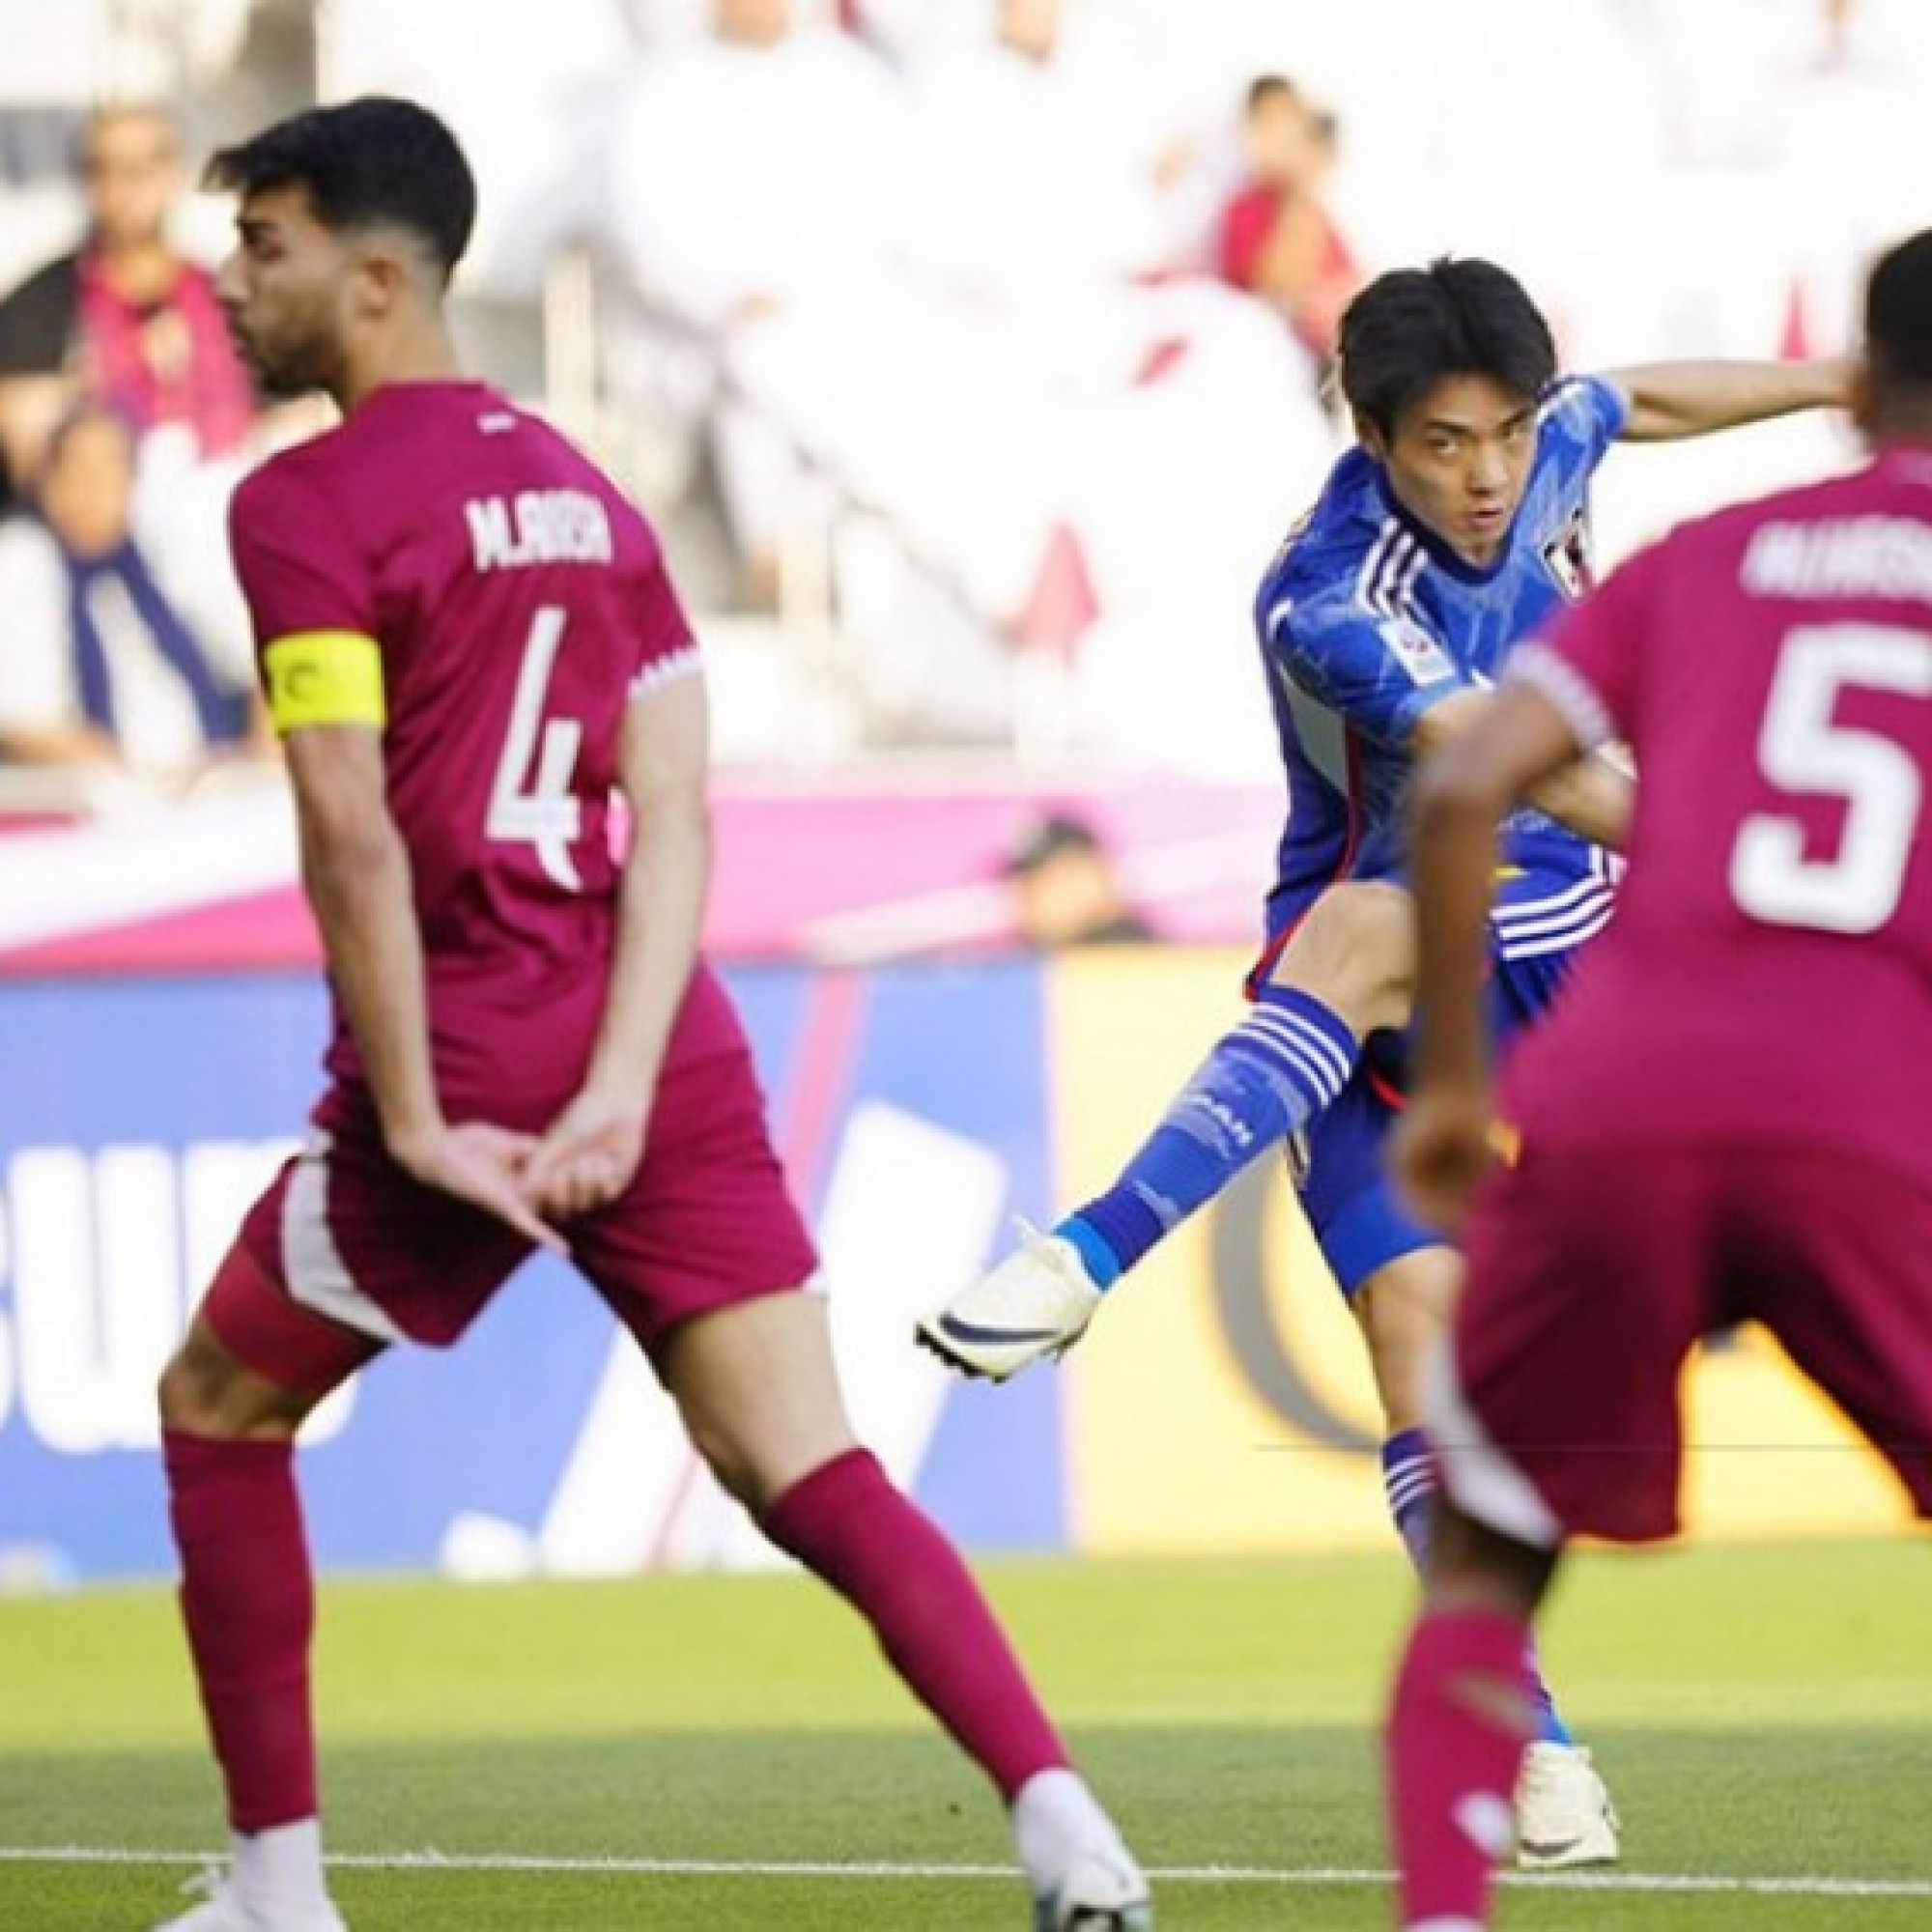  - Trực tiếp bóng đá U23 Qatar - U23 Nhật Bản: "Samurai xanh" vượt lên (U23 châu Á)